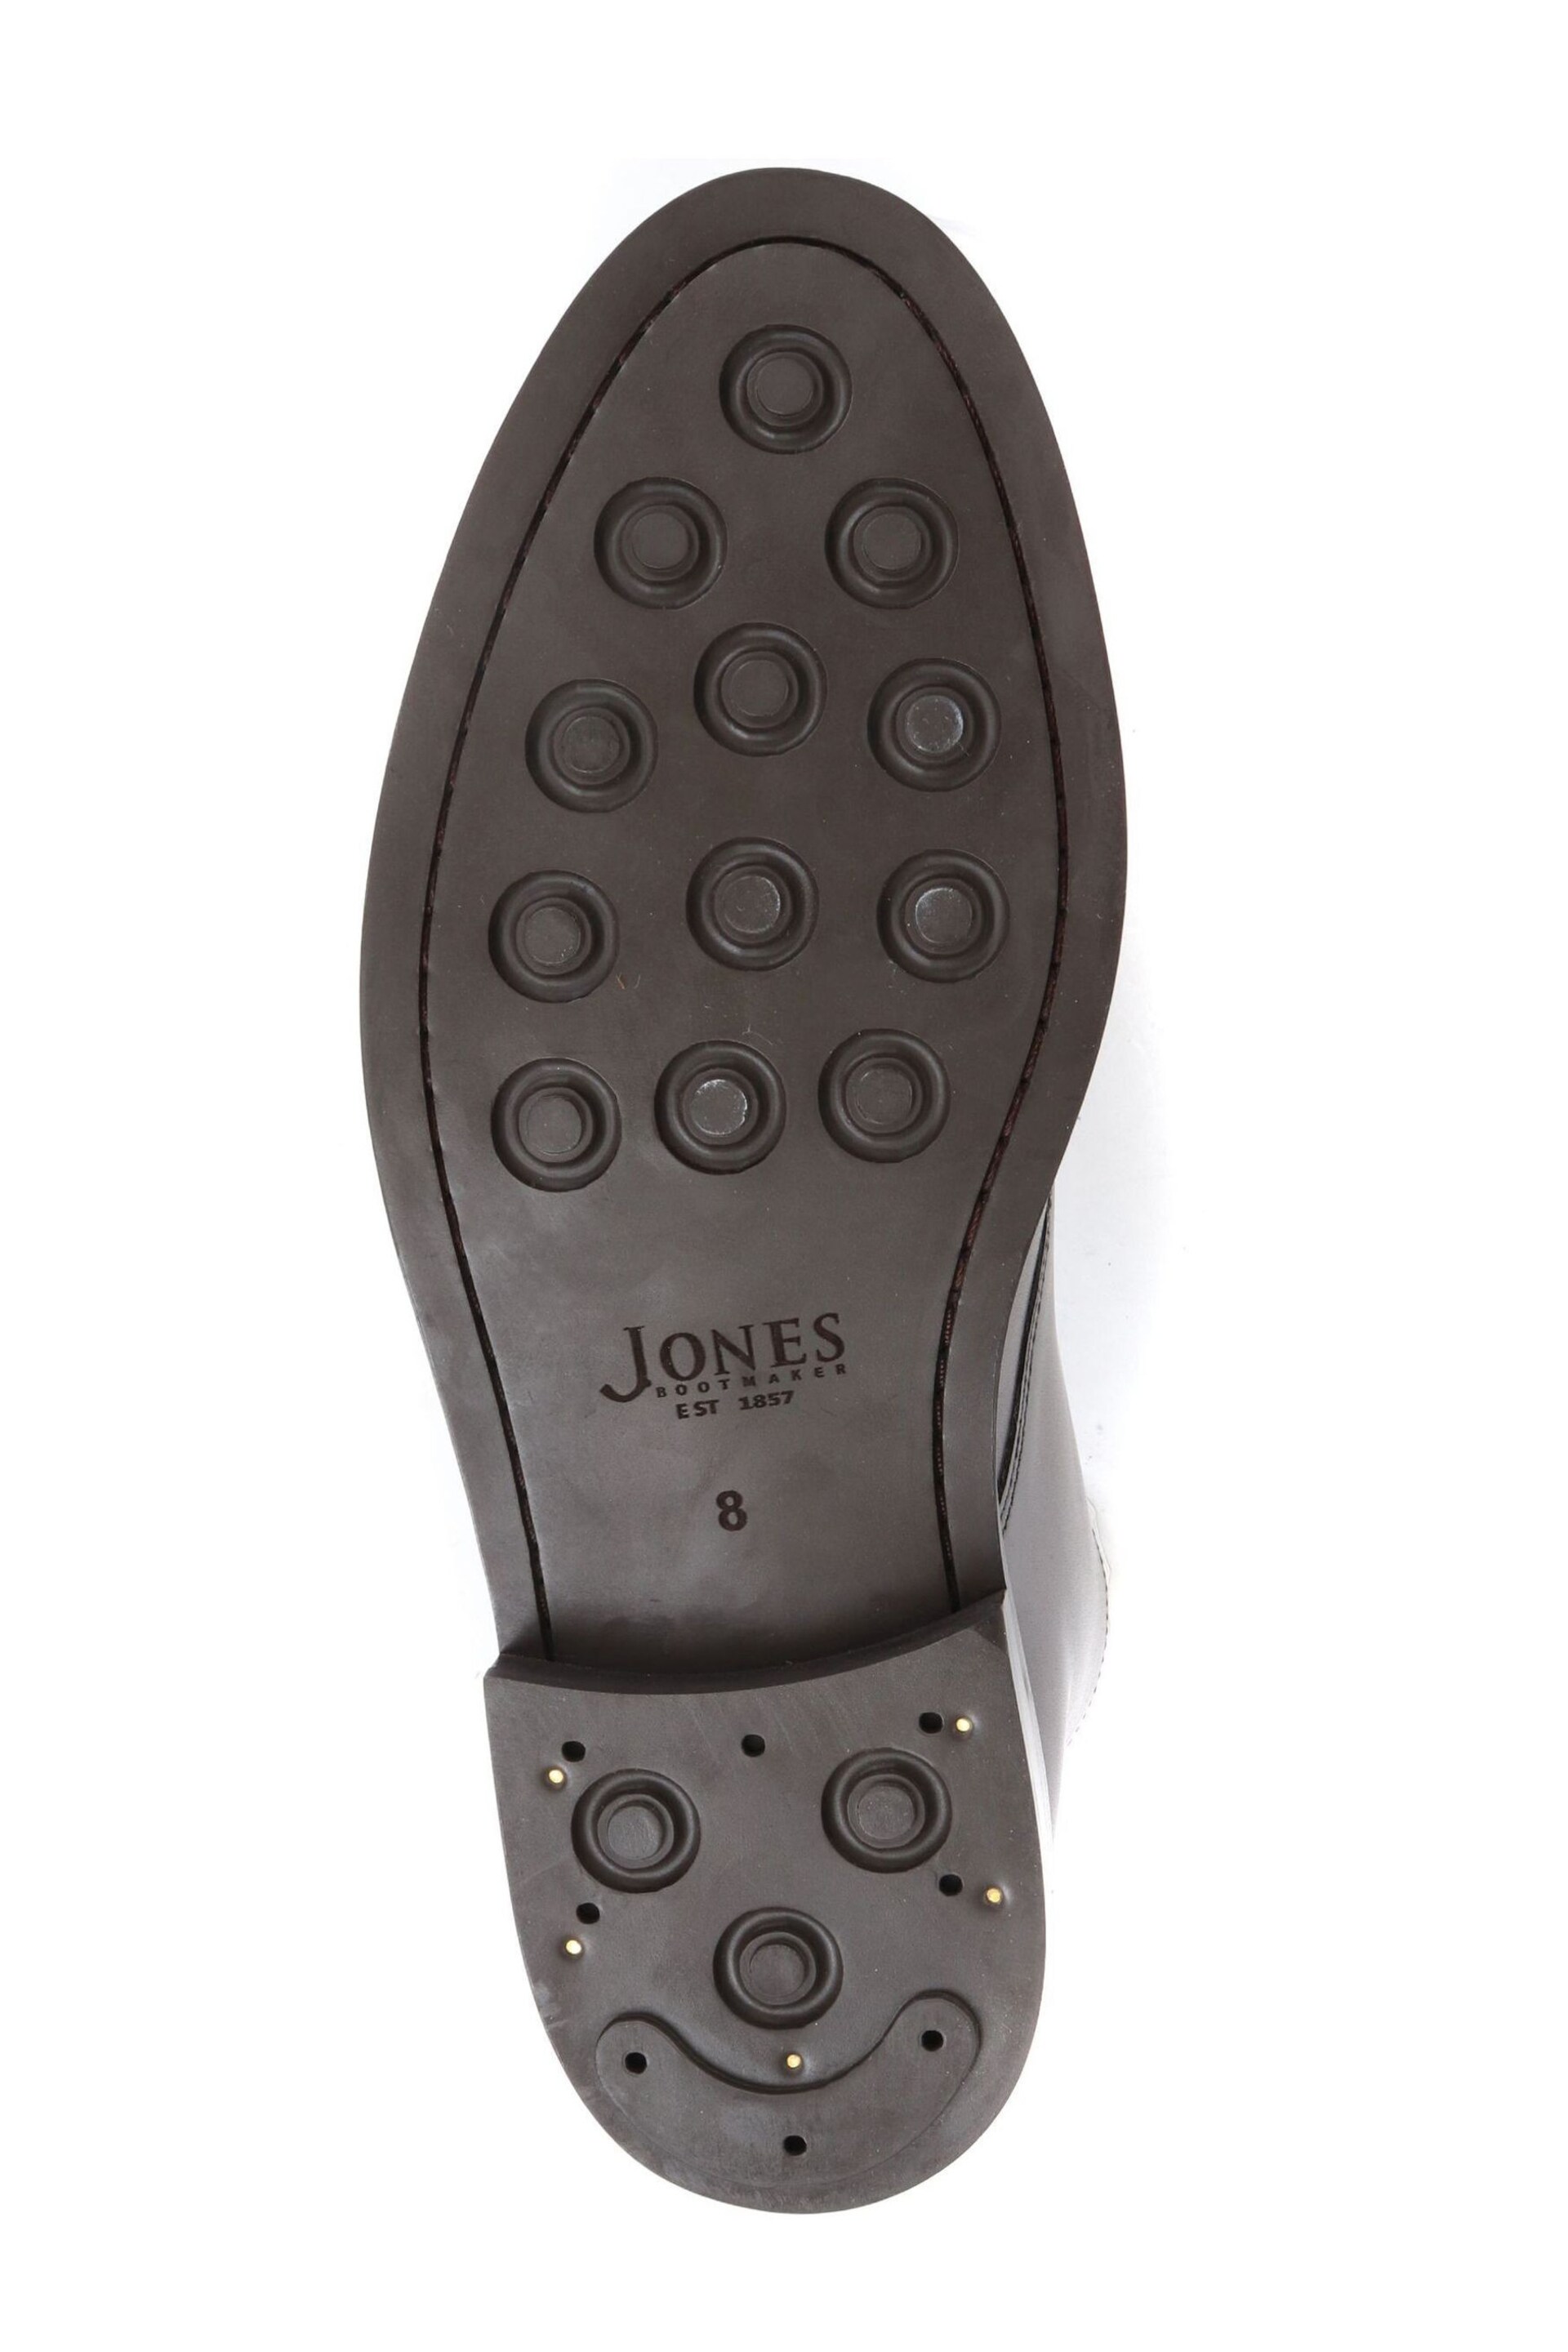 Jones Bootmaker Deacon Brown Suede Chukka Boots - Image 5 of 5